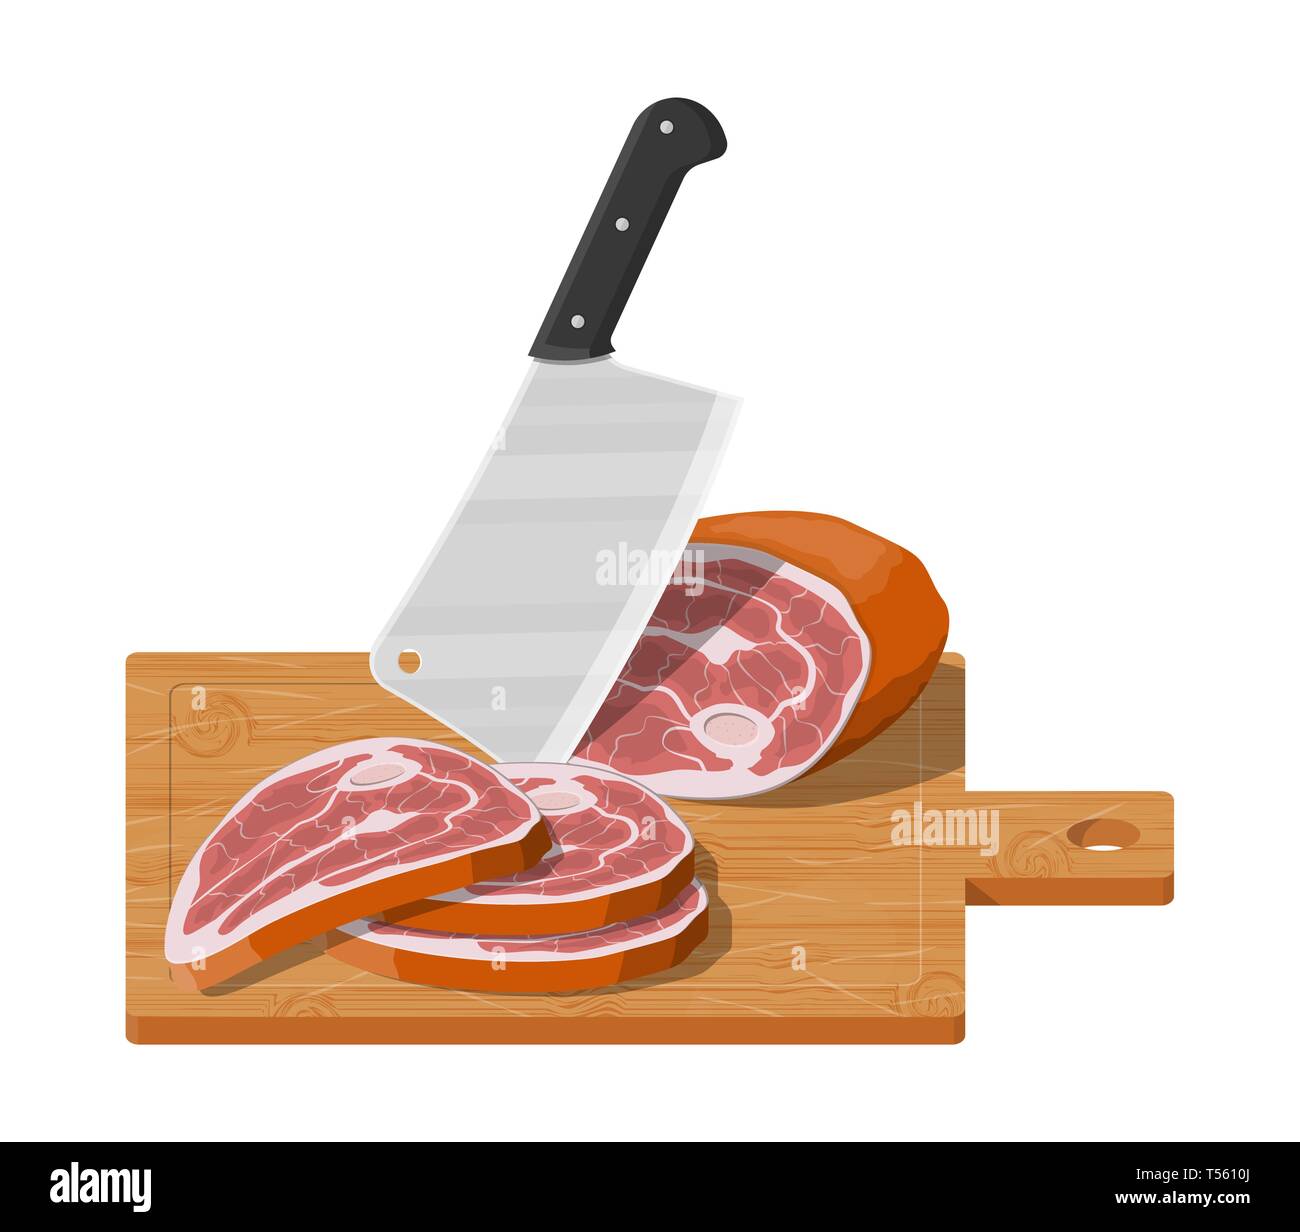 https://c8.alamy.com/compes/t5610j/filete-de-carne-picada-en-placa-de-madera-con-cuchillo-de-cocina-tabla-de-cortar-carnicero-cleaver-y-piace-de-carne-los-utensilios-cubiertos-de-mesa-cocinar-domesti-t5610j.jpg